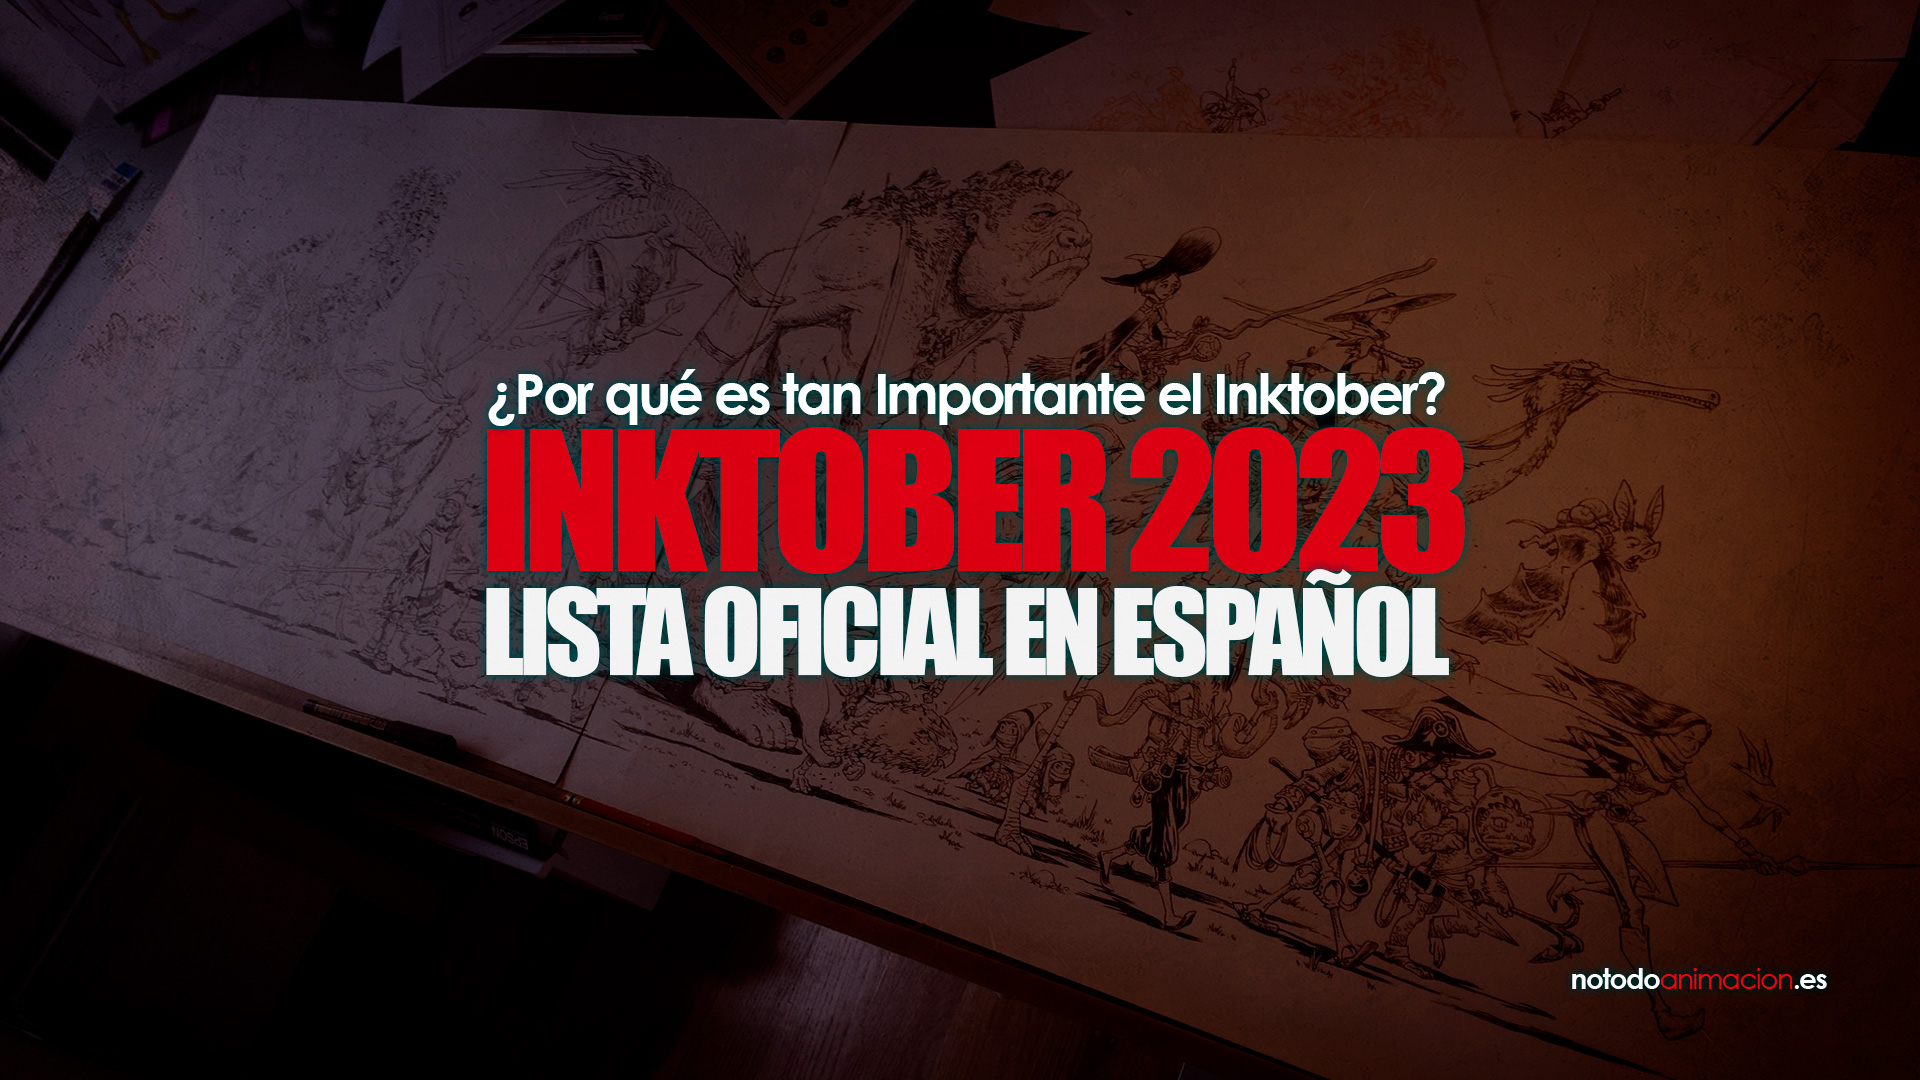 Inktober 2024 Español ️ Lista Oficial ¿Por qué es tan Importante?